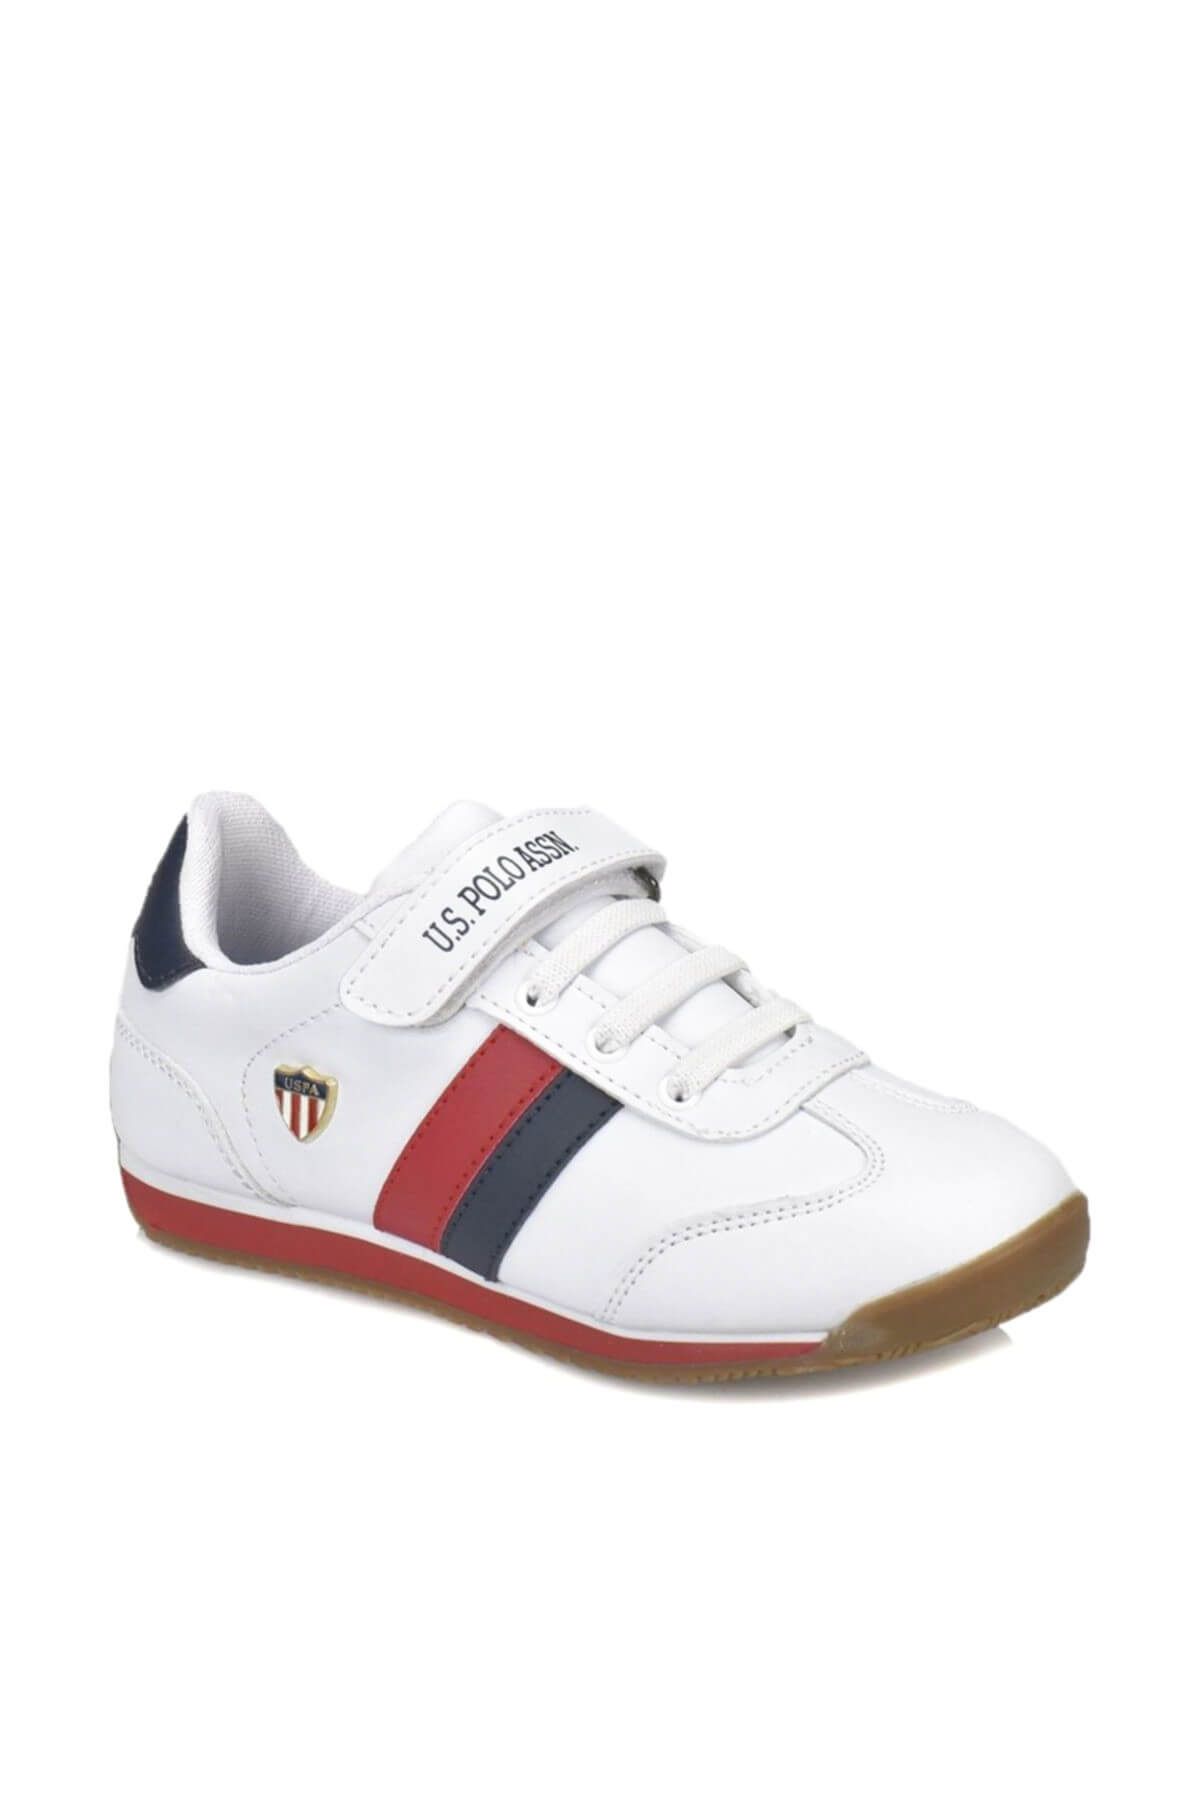 U.S. Polo Assn. Boni Wt Beyaz Erkek Çocuk Sneaker Ayakkabı 100320088